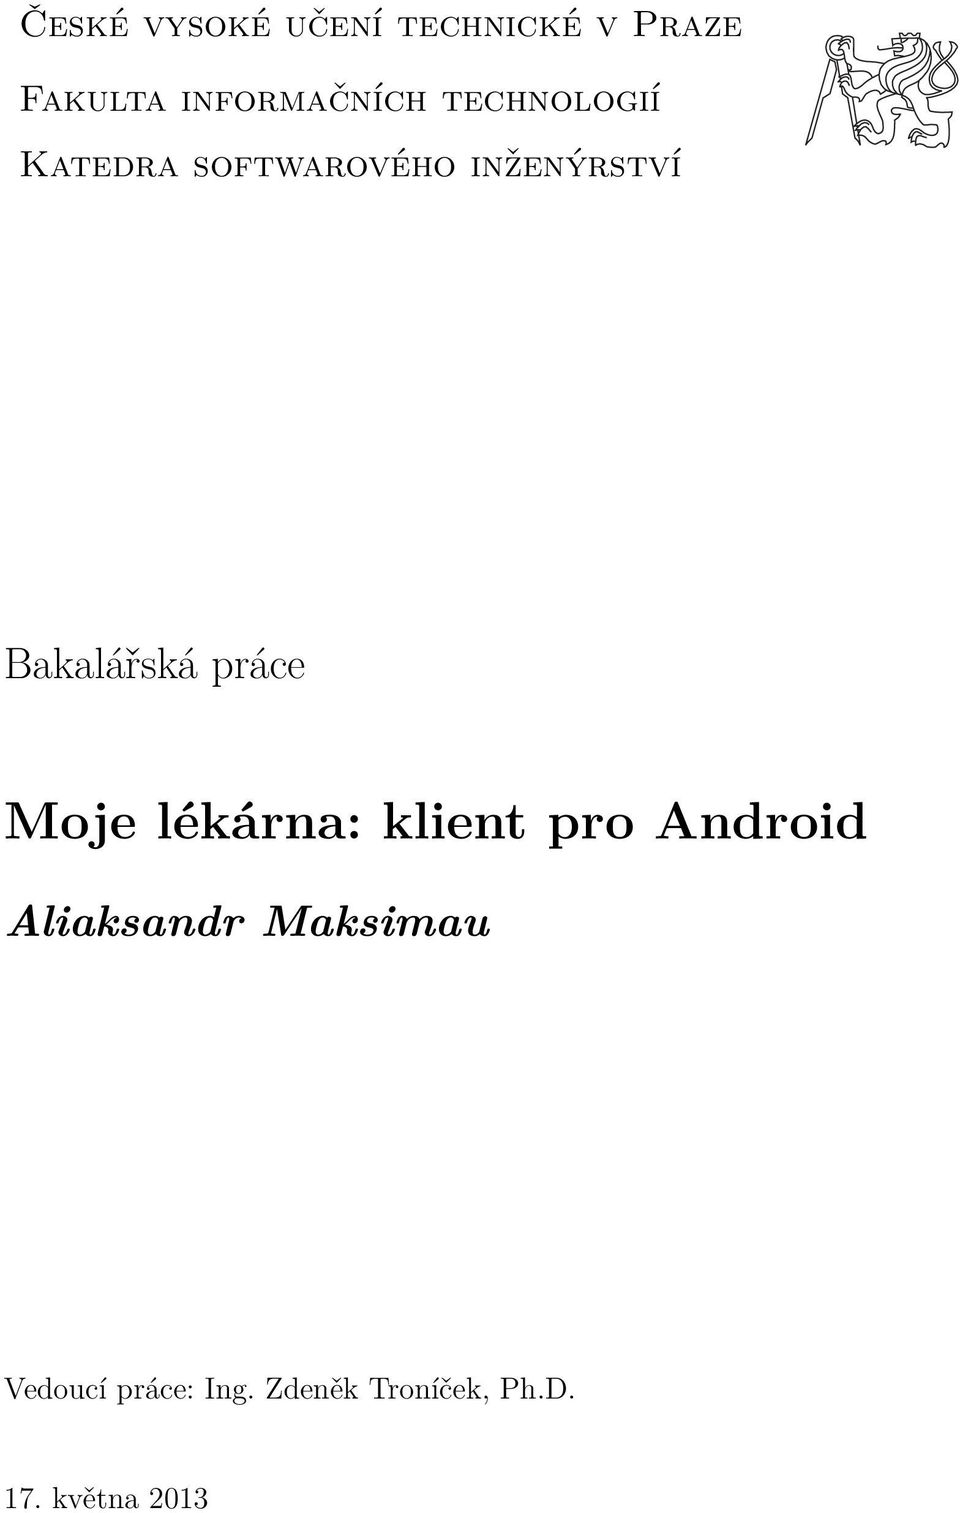 práce Moje lékárna: klient pro Android Aliaksandr